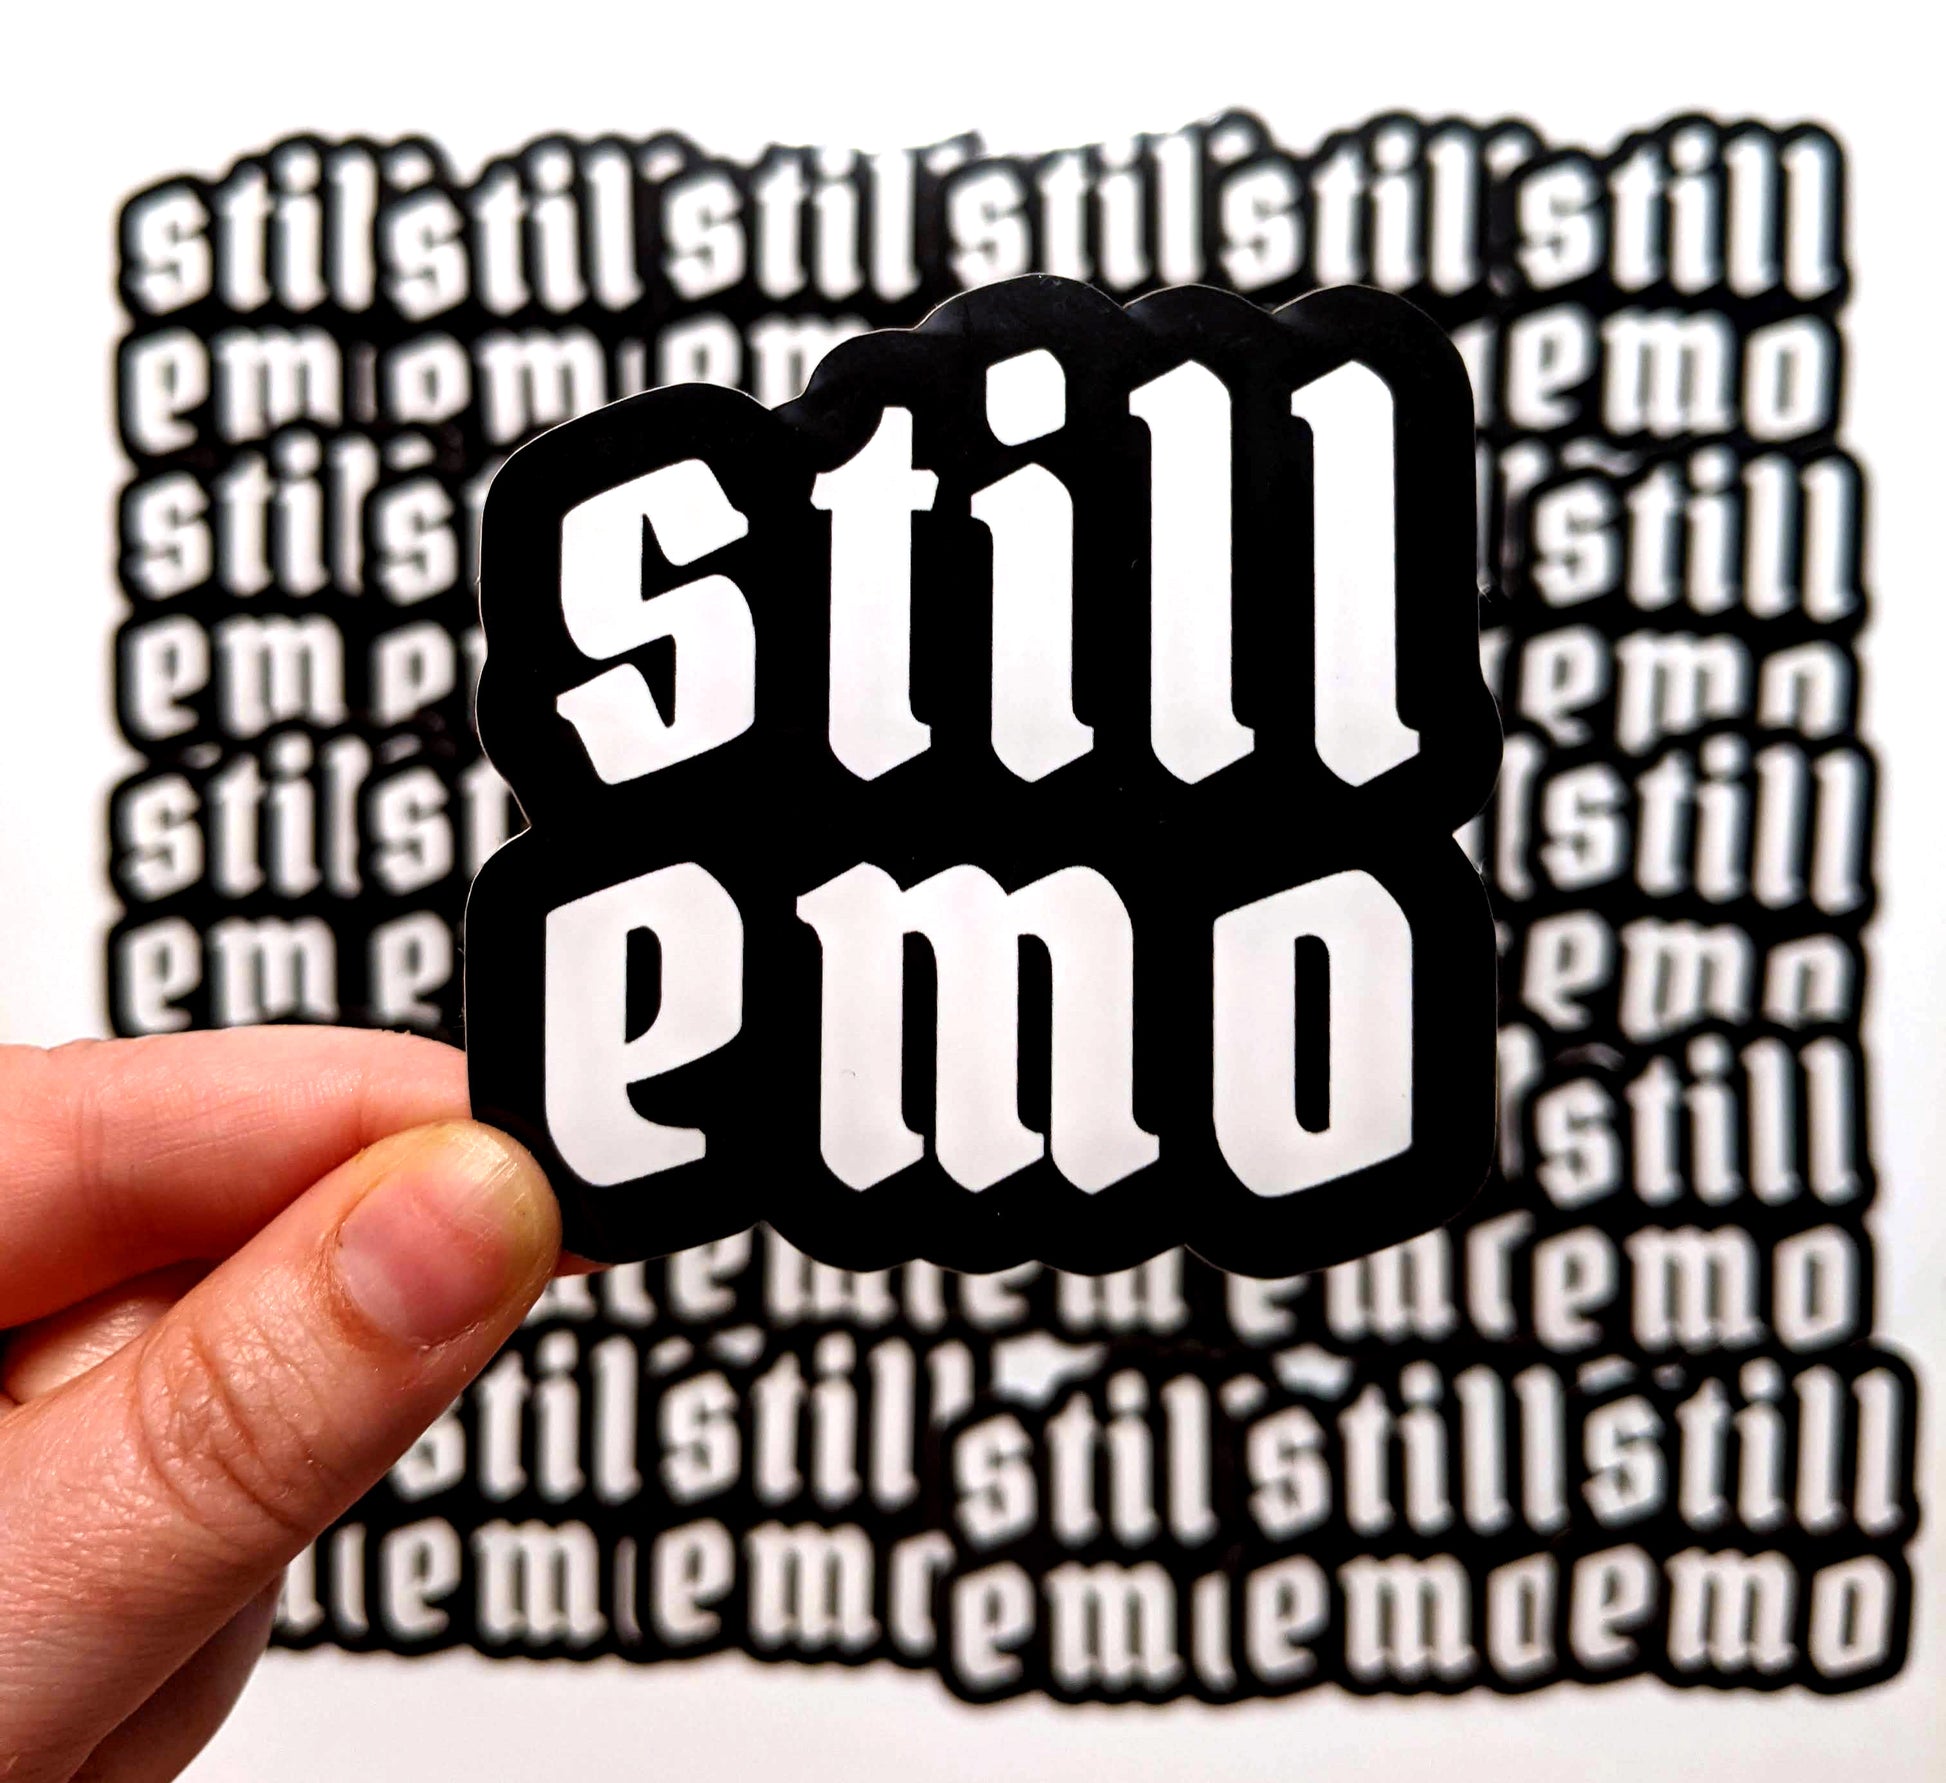 Elder Emo Gifts | Sticker